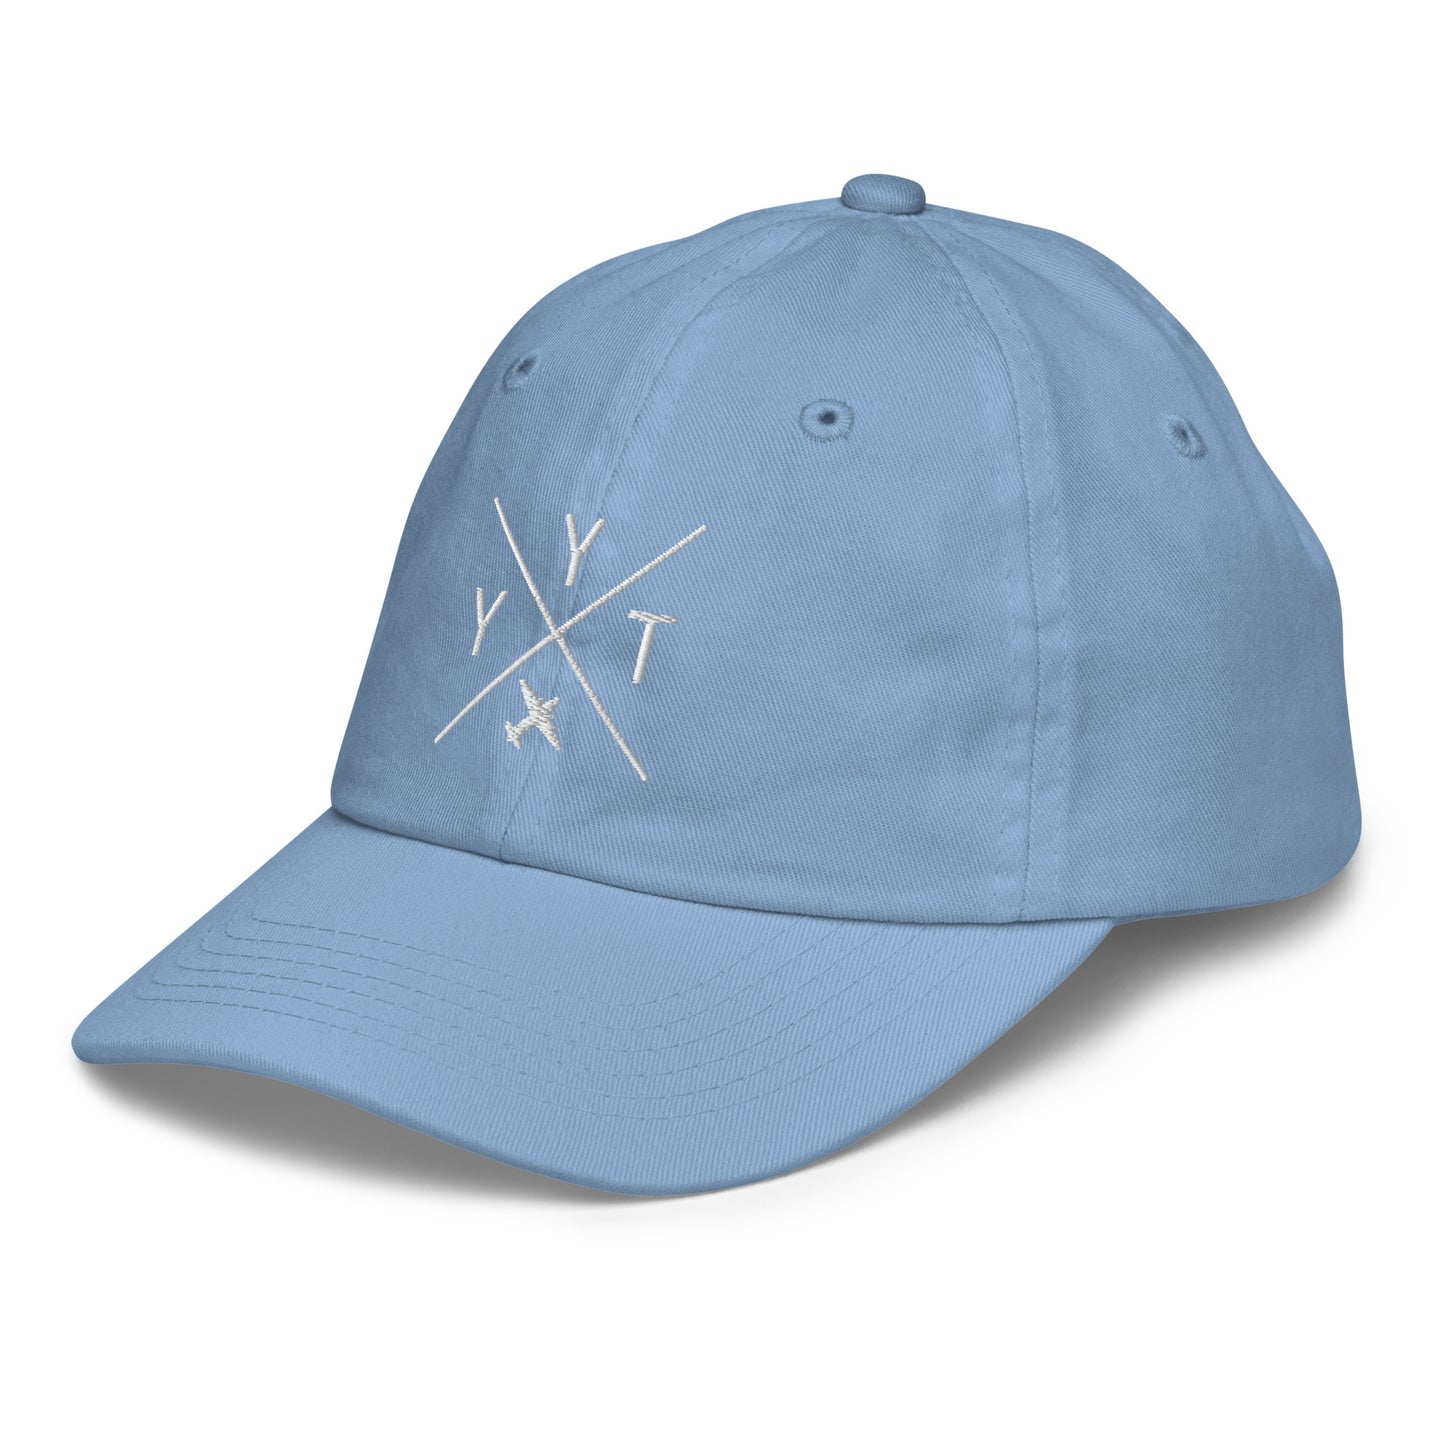 Crossed-X Kid's Baseball Cap - White • YYT St. John's • YHM Designs - Image 24